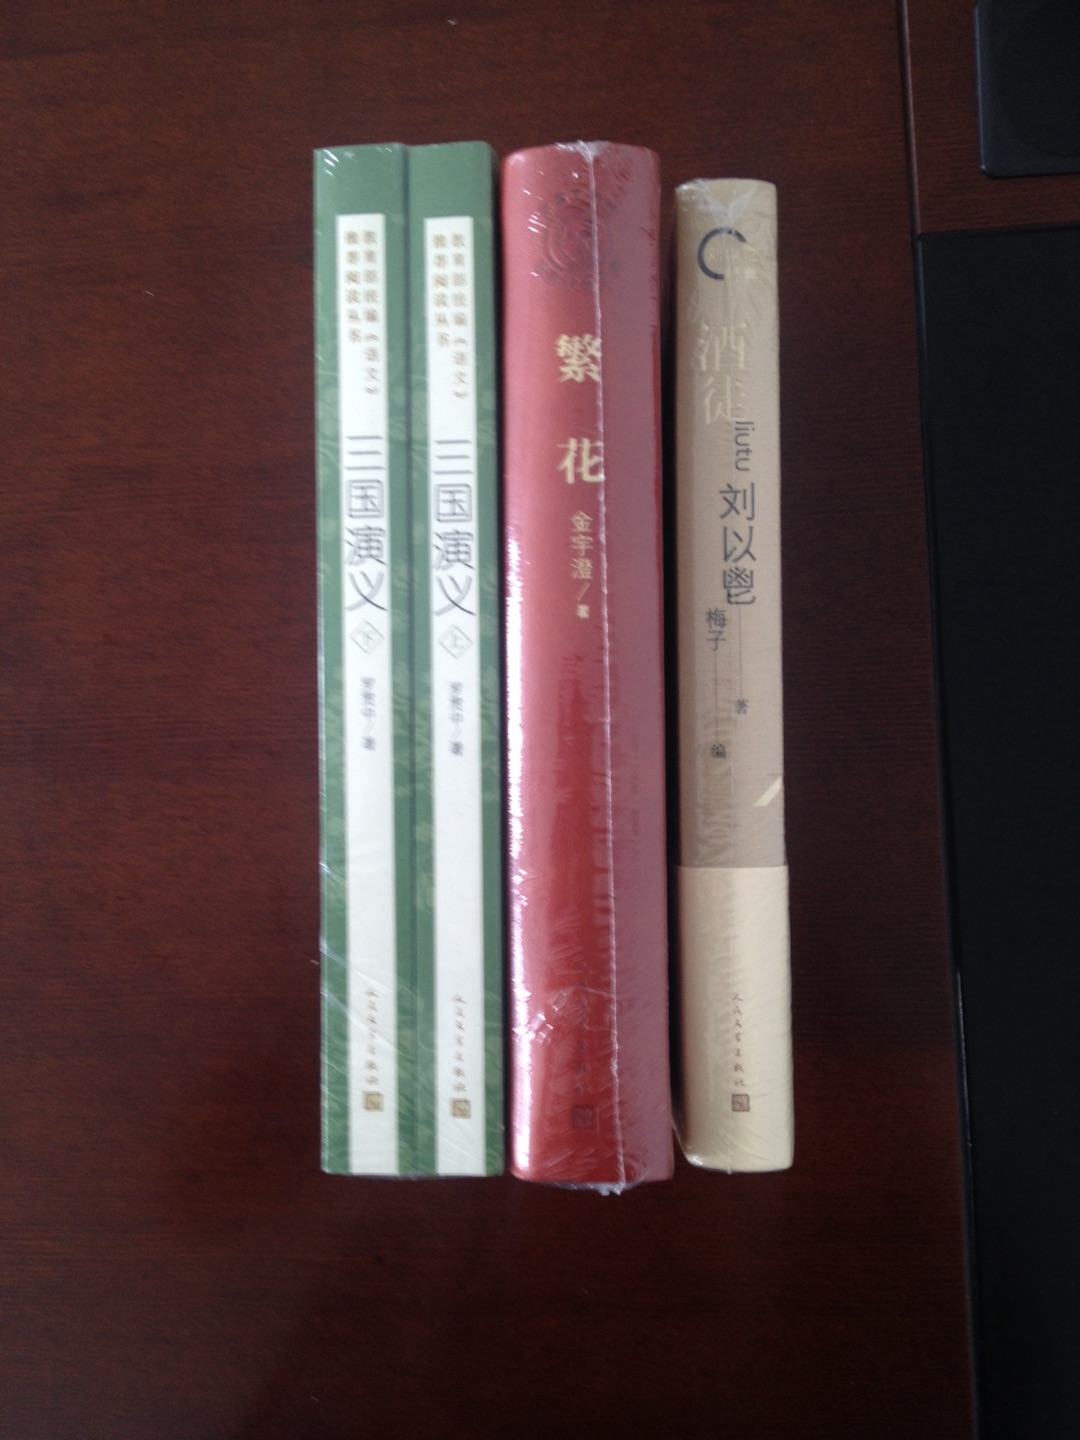 已经购买了人文版精装《酒徒》??，这次又购买了《对倒》（刘以鬯经典）“对倒”指一正一负双连邮票，借用此形式，作者于1972年创作了长篇小说《对倒》，后又浓缩为短篇，本书为长、短篇合集。2000年，《对倒》引发香港导演王家卫拍摄电影《花样年华》。 一个是上海移居香港，在回忆中怀旧的中年男子；一个是香港土生土长，在幻想中憧憬的青春少女，他们互不相识，各自游荡在70年代的香港街头，带着各自的见闻和感受迎面而行，又背向远去，仅有的一次邂逅，也是擦肩而过……